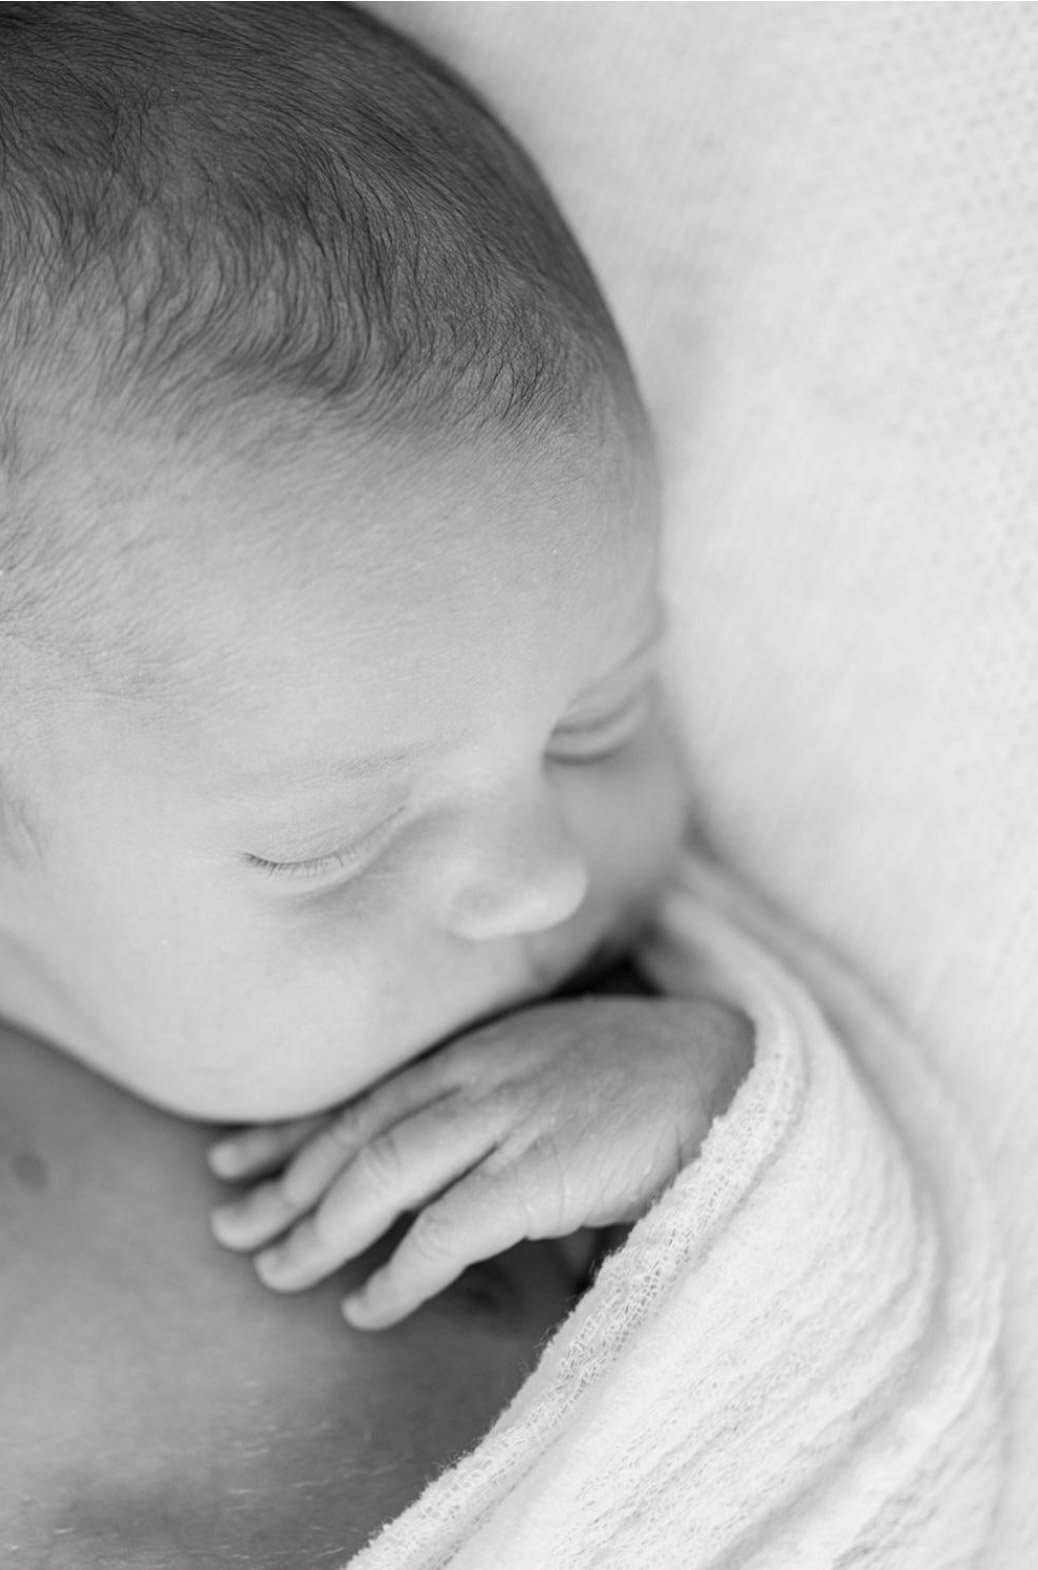 Portfolio 22 Baby Neugeborenen Schwangerschaft Babybauch Fotografin Zürich  Geraldine Leblanc Fotos  00025.JPG